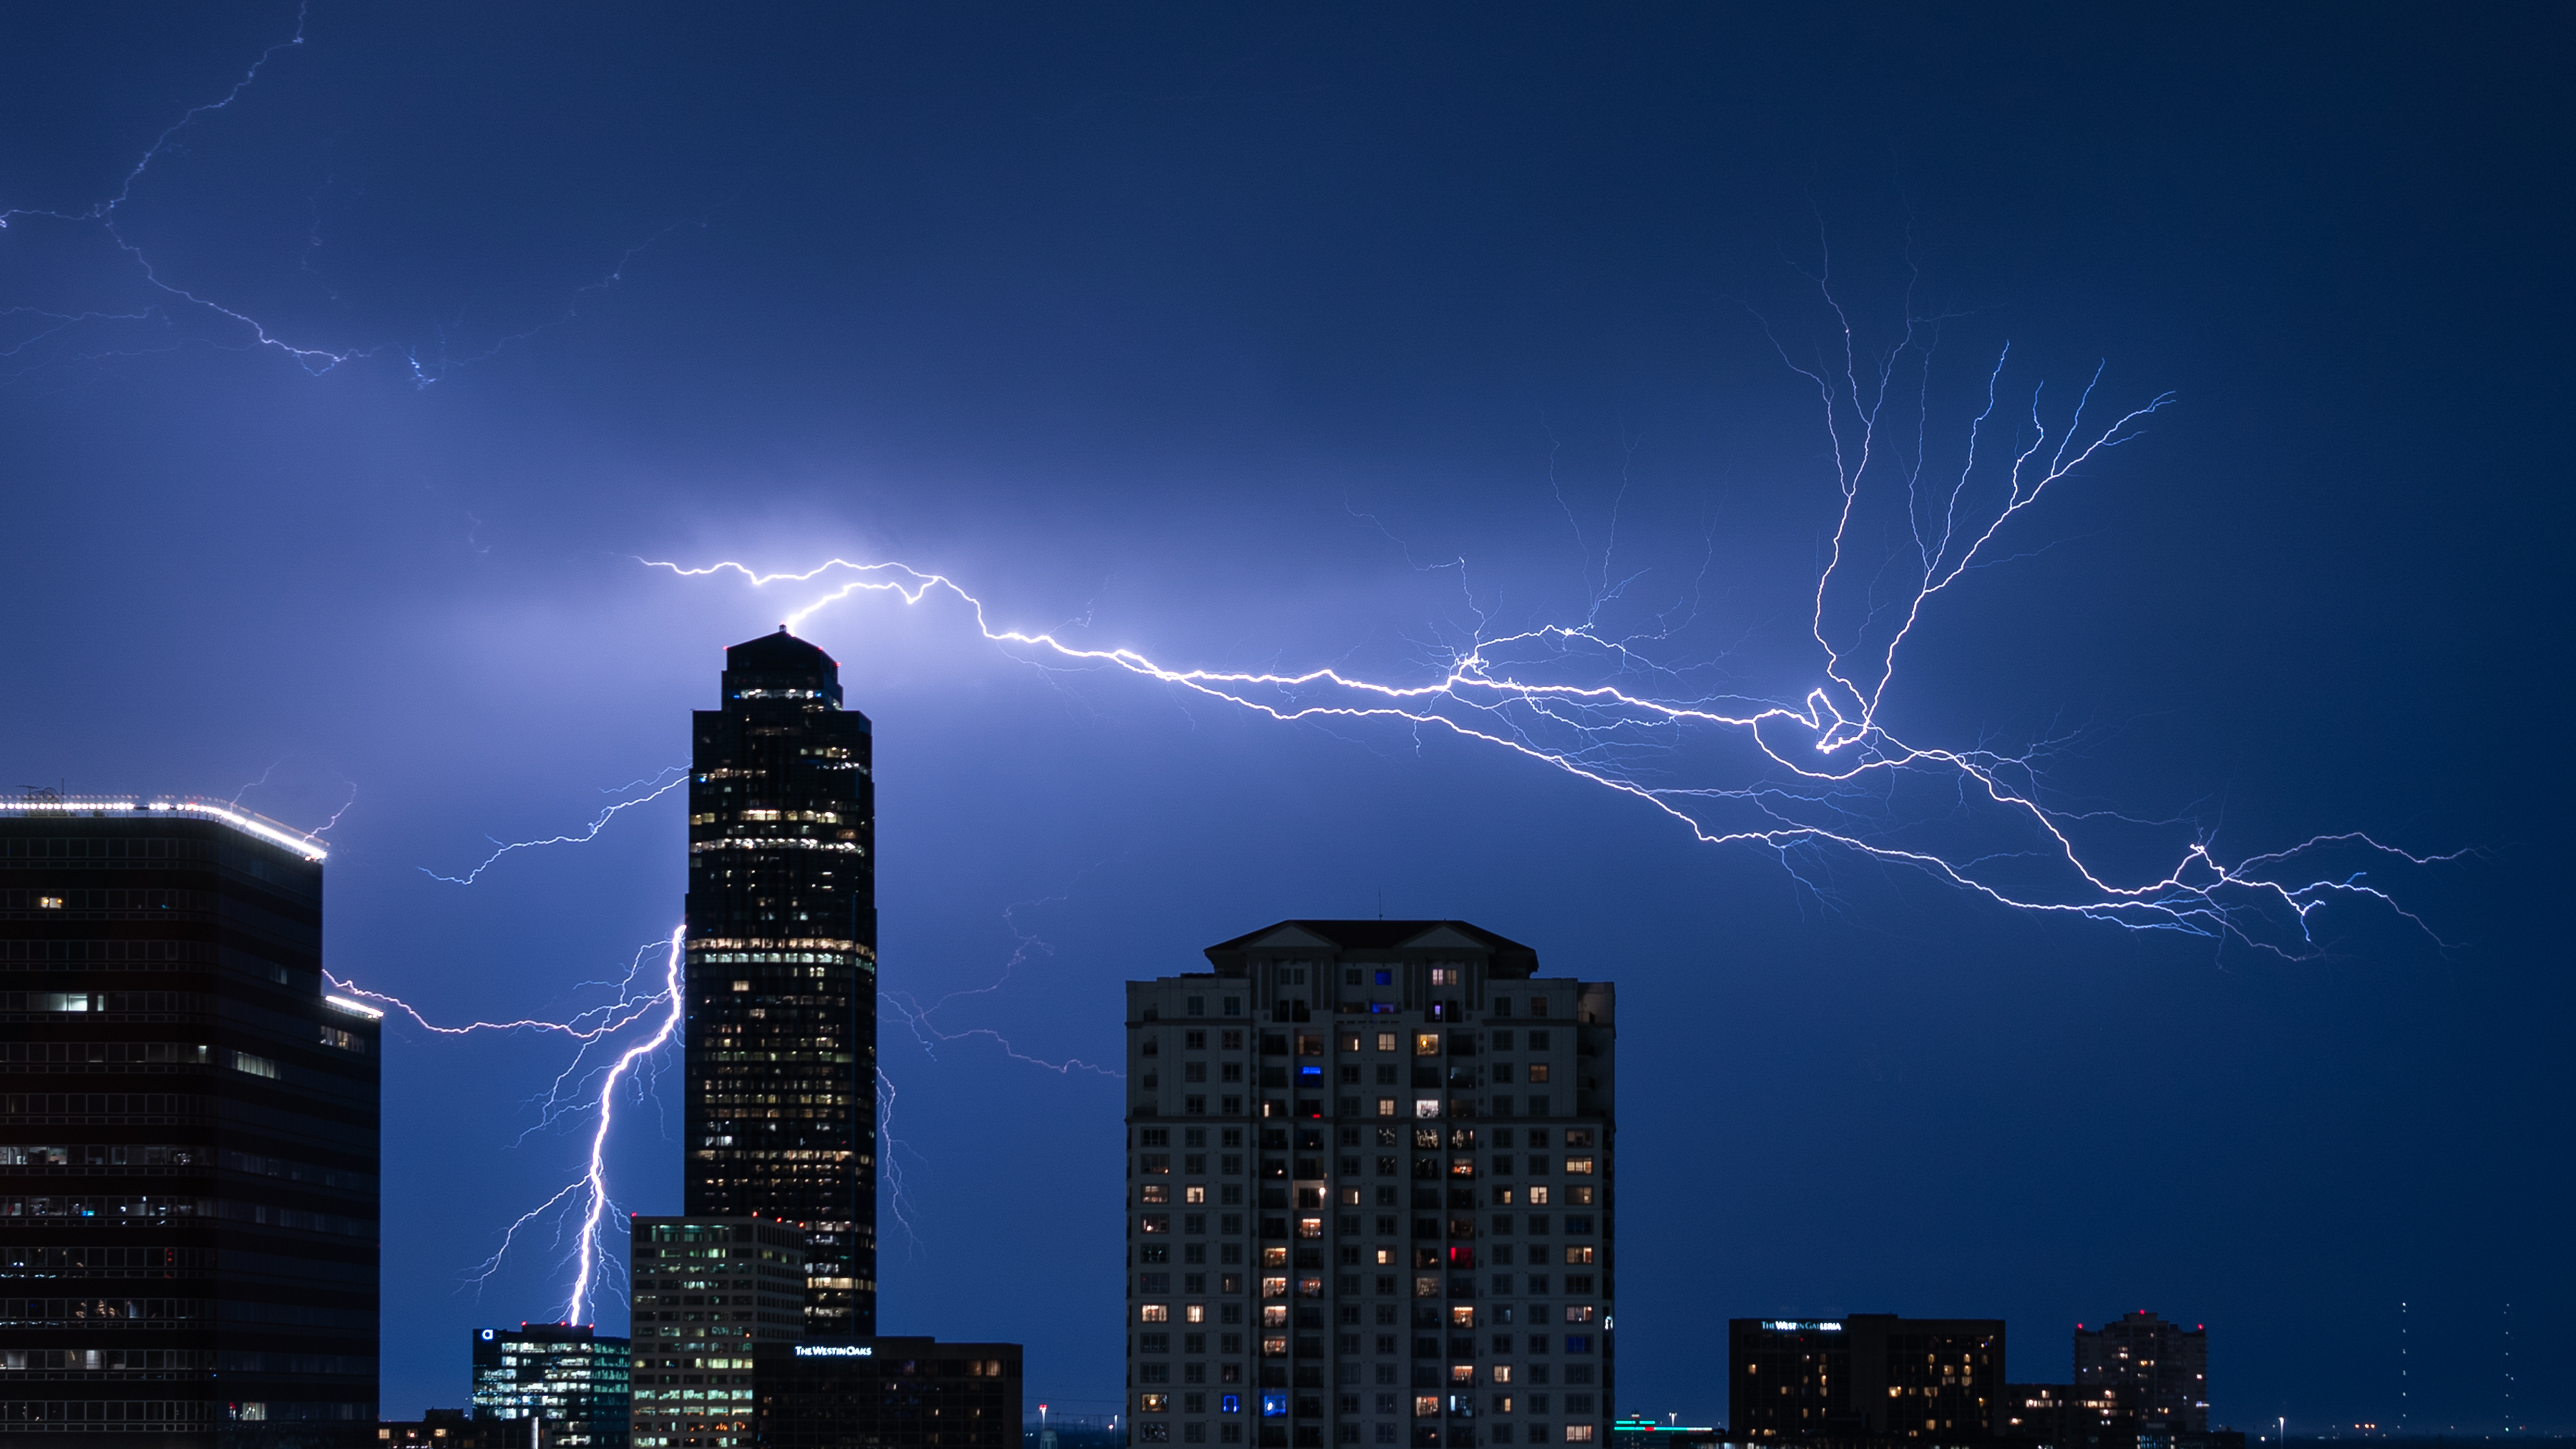 (国际·一周看天下)美国休斯敦:夜空中的闪电